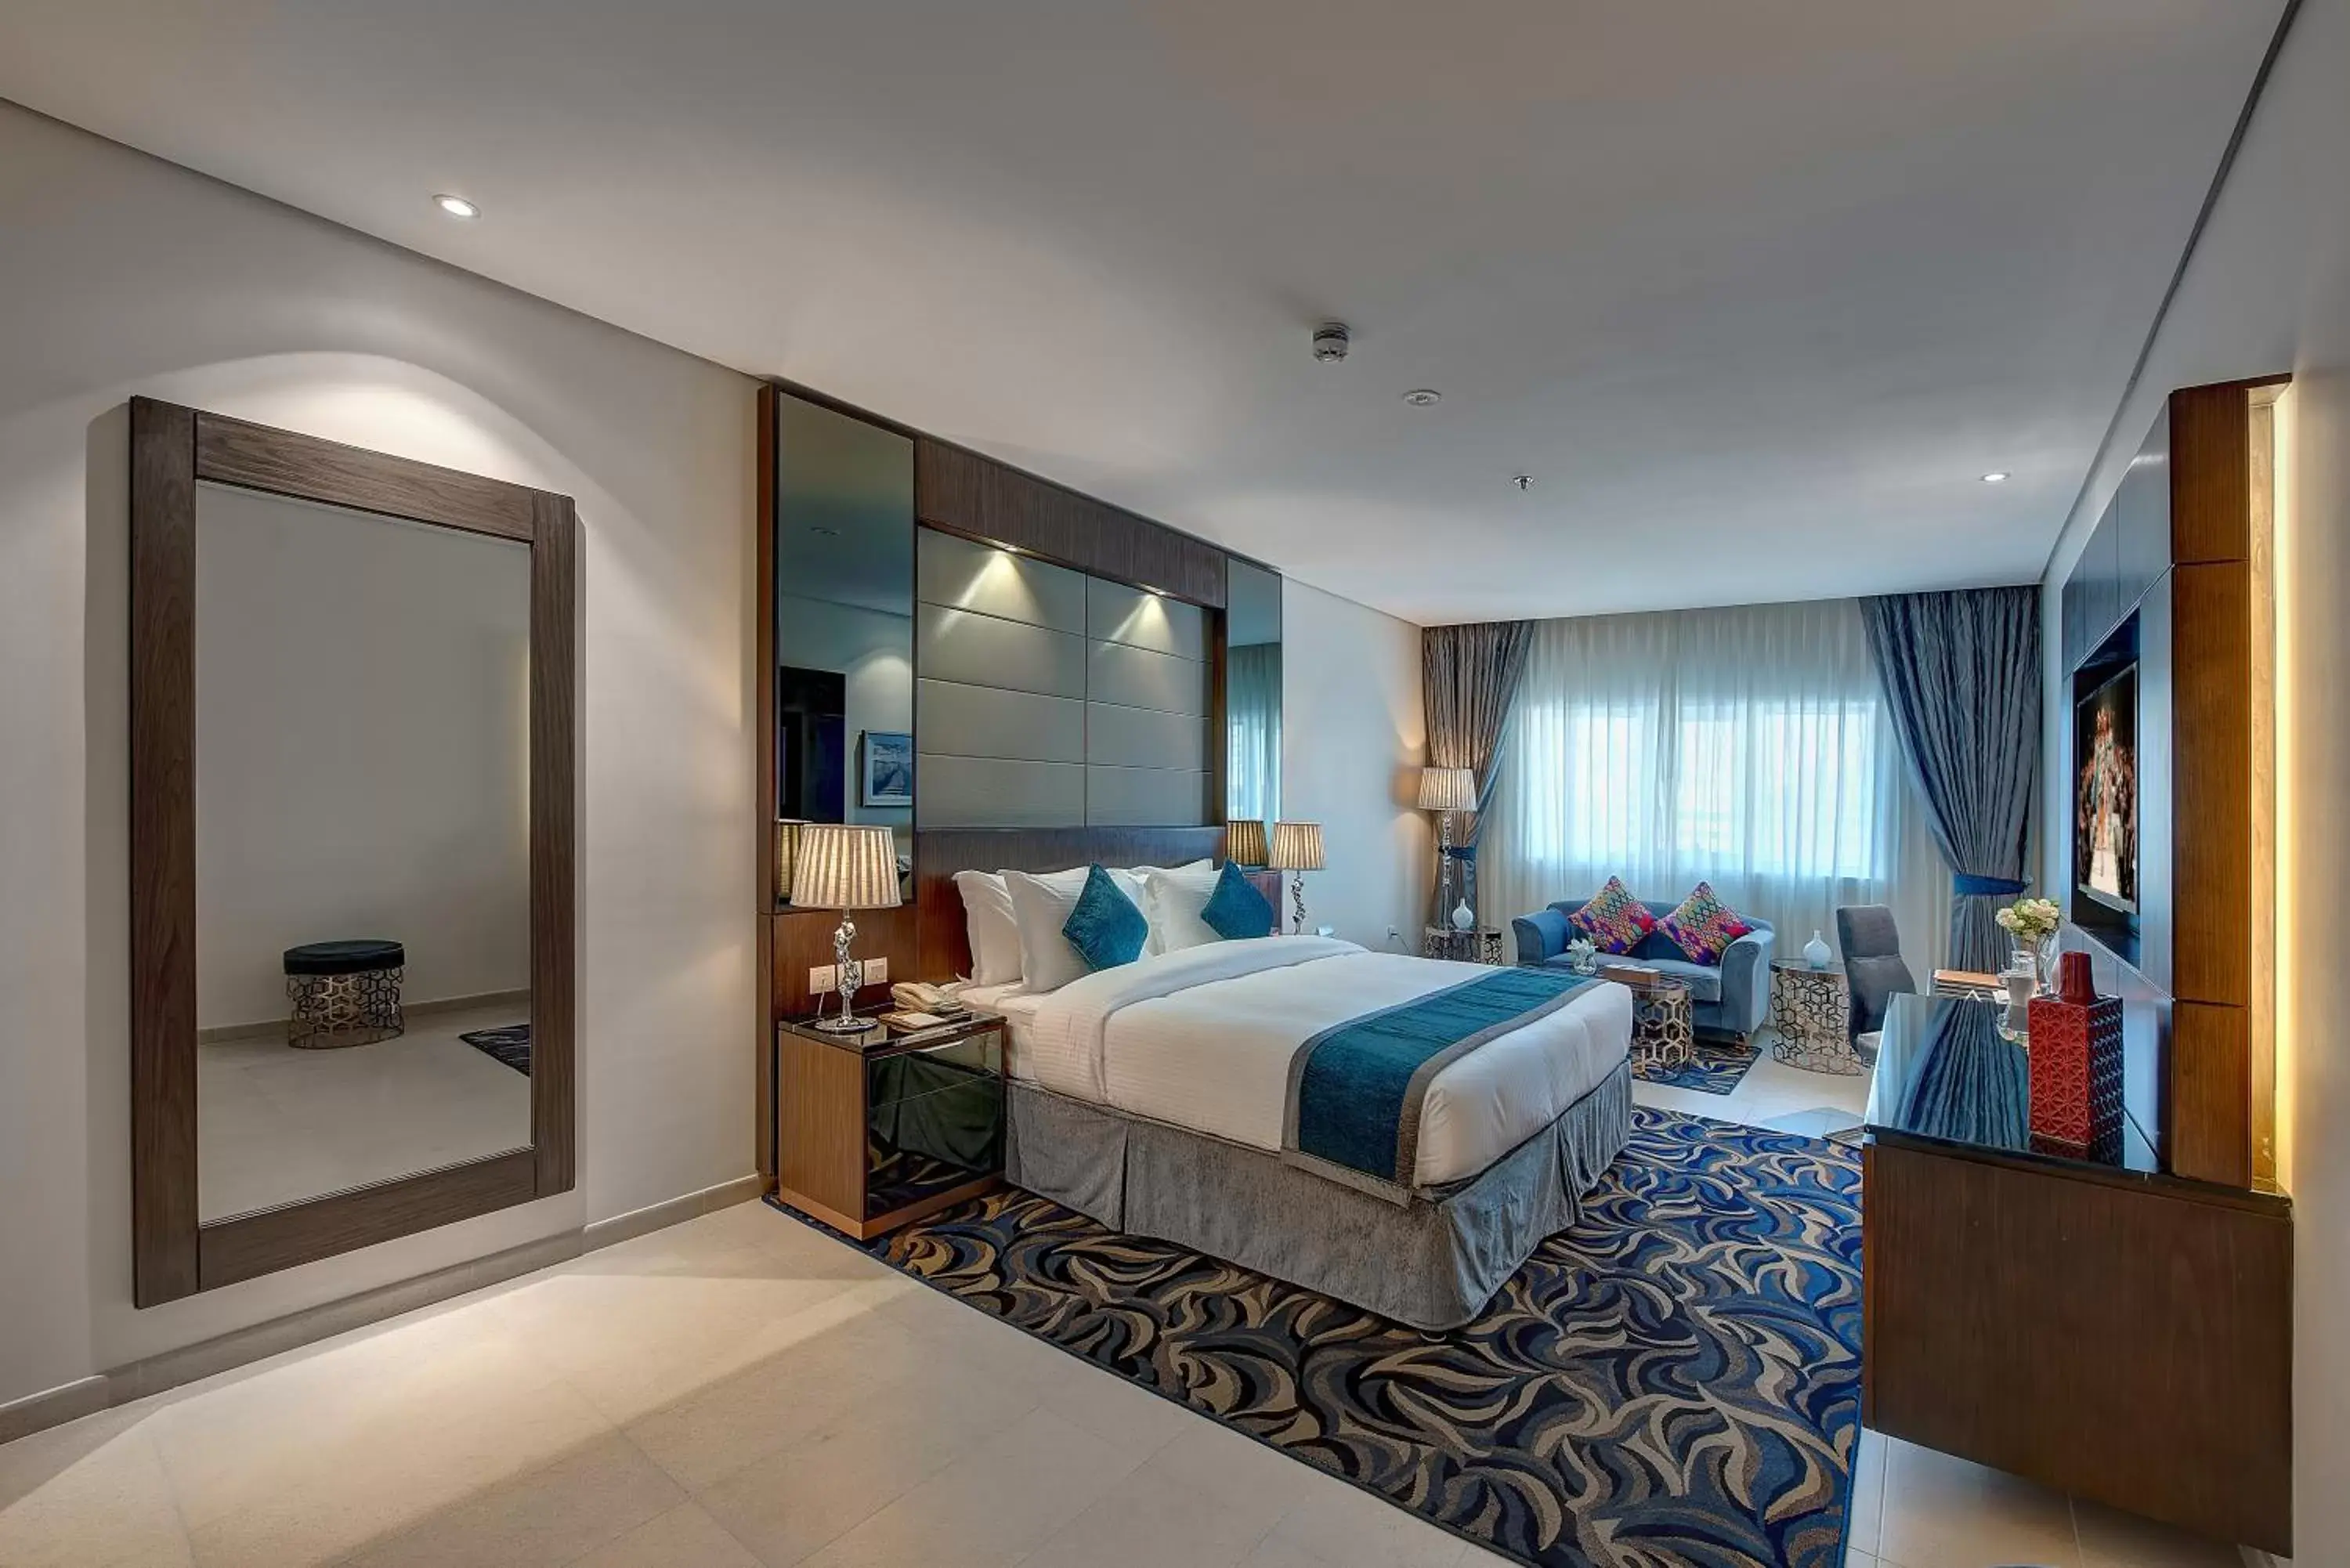 Photo of the whole room in Omega Hotel Dubai